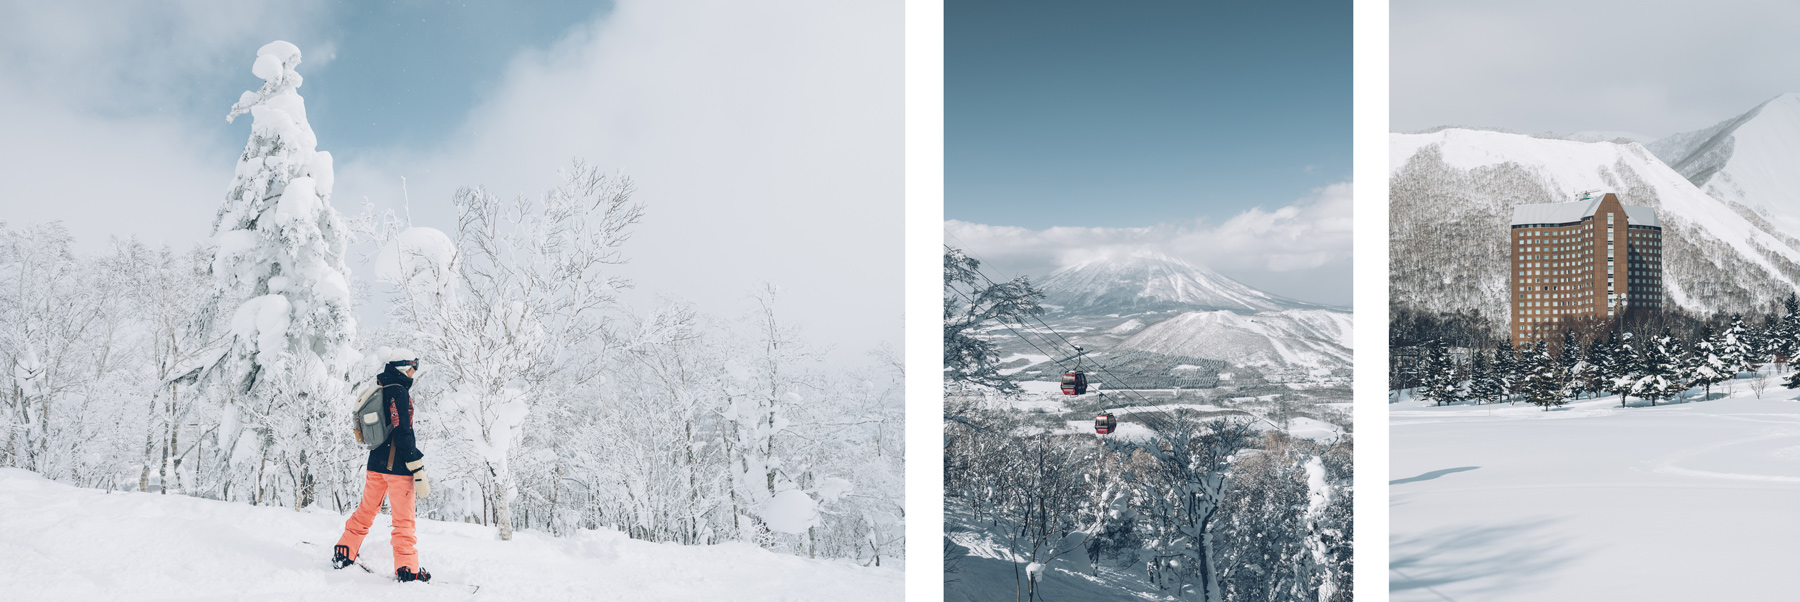 Station de ski au Japon: Rusutsu, Hokkaido